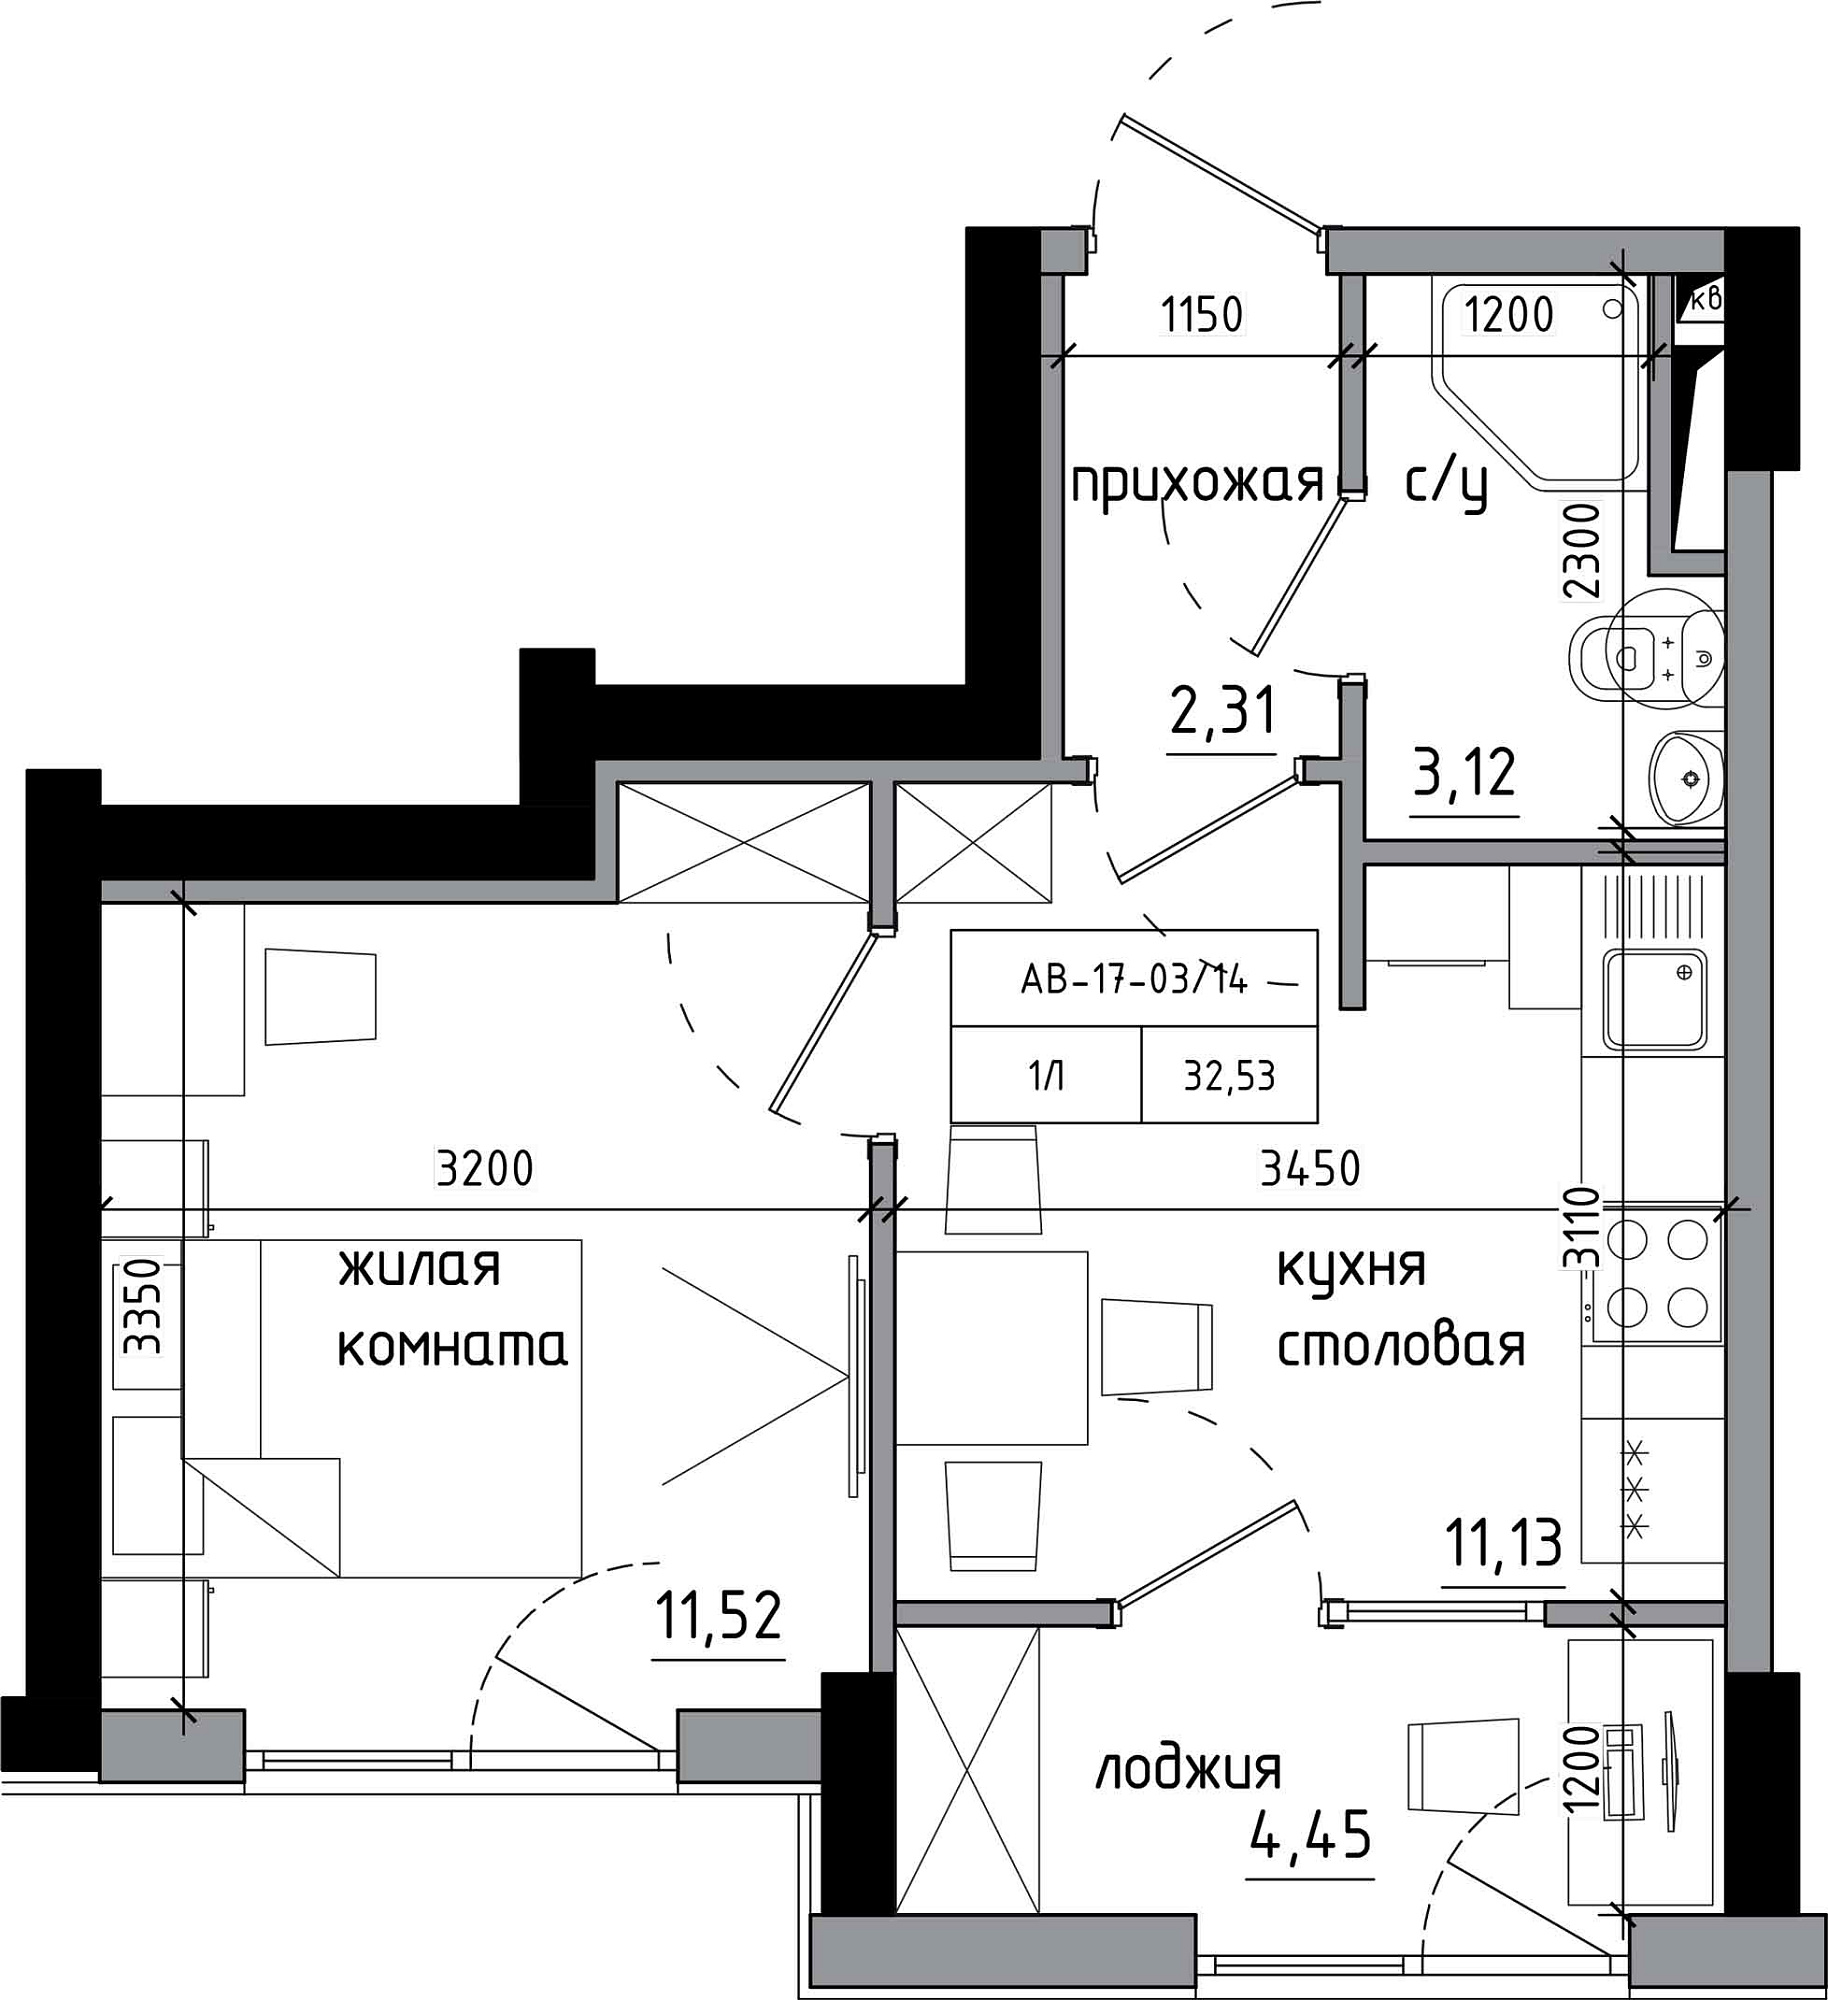 Планування 1-к квартира площею 32.53м2, AB-17-03/00014.